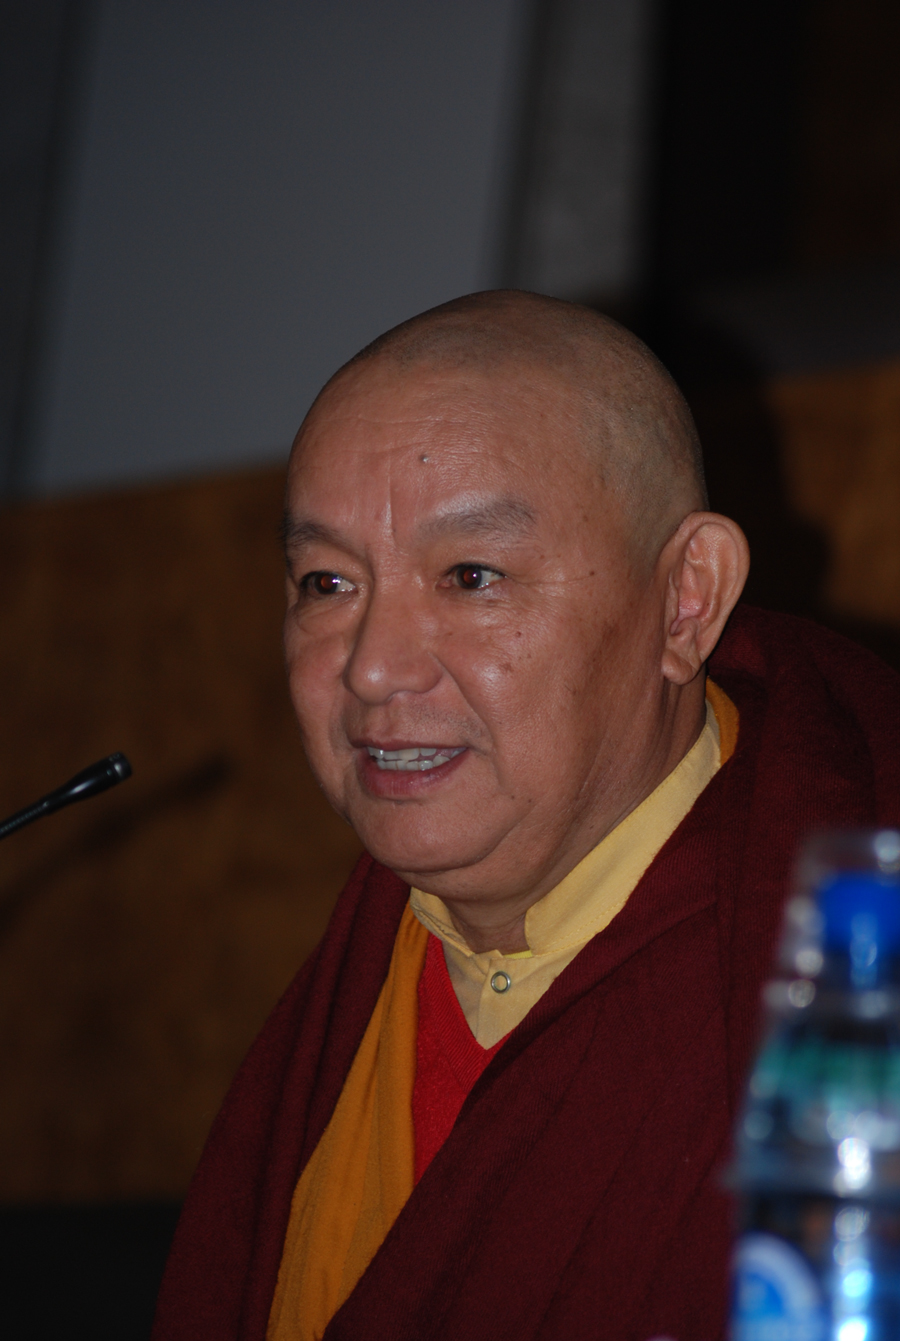 En este momento estás viendo El lama Drubgyu Tenpa ofrece una conferencia en el salón de actos de Humanidades el jueves 17 de enero de 2019